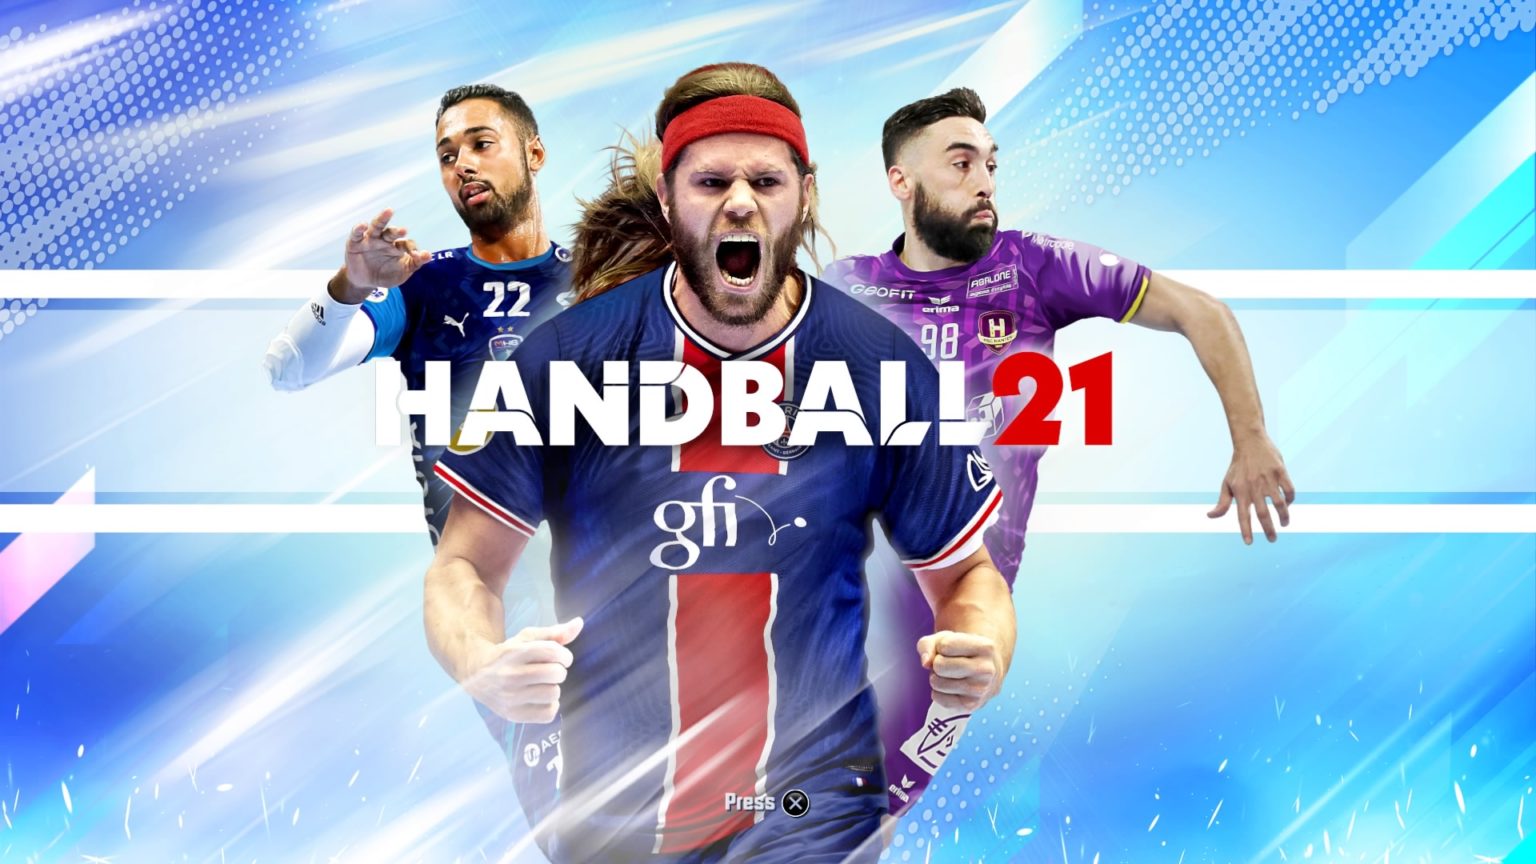 Handball 21 20201119175359 1536x864 